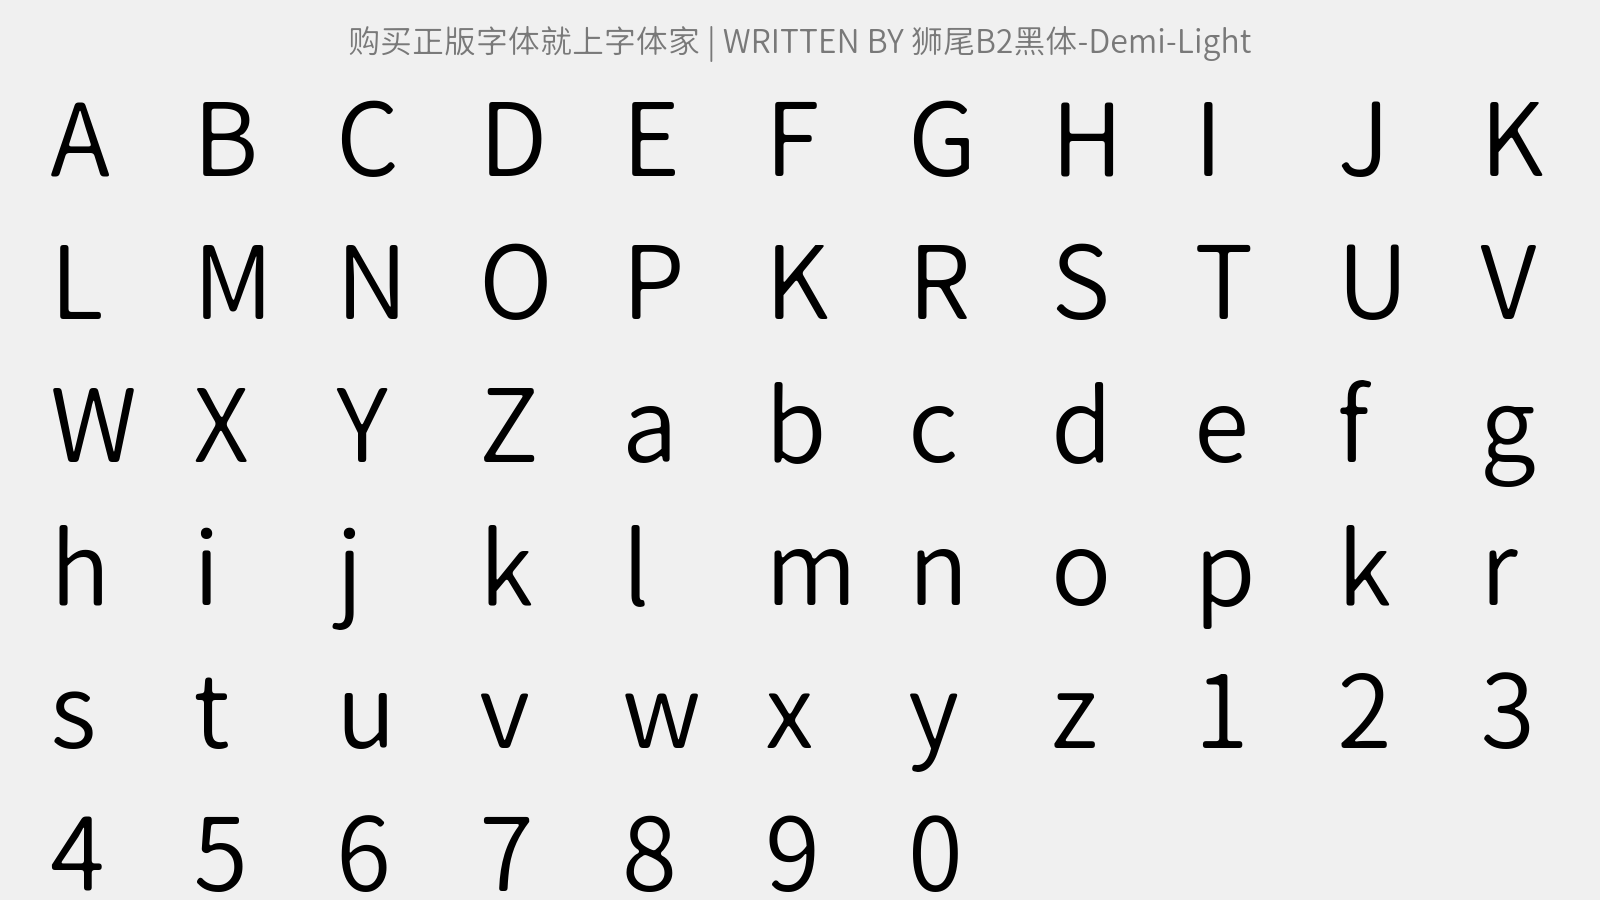 狮尾B2黑体-Demi-Light - 大写字母/小写字母/数字